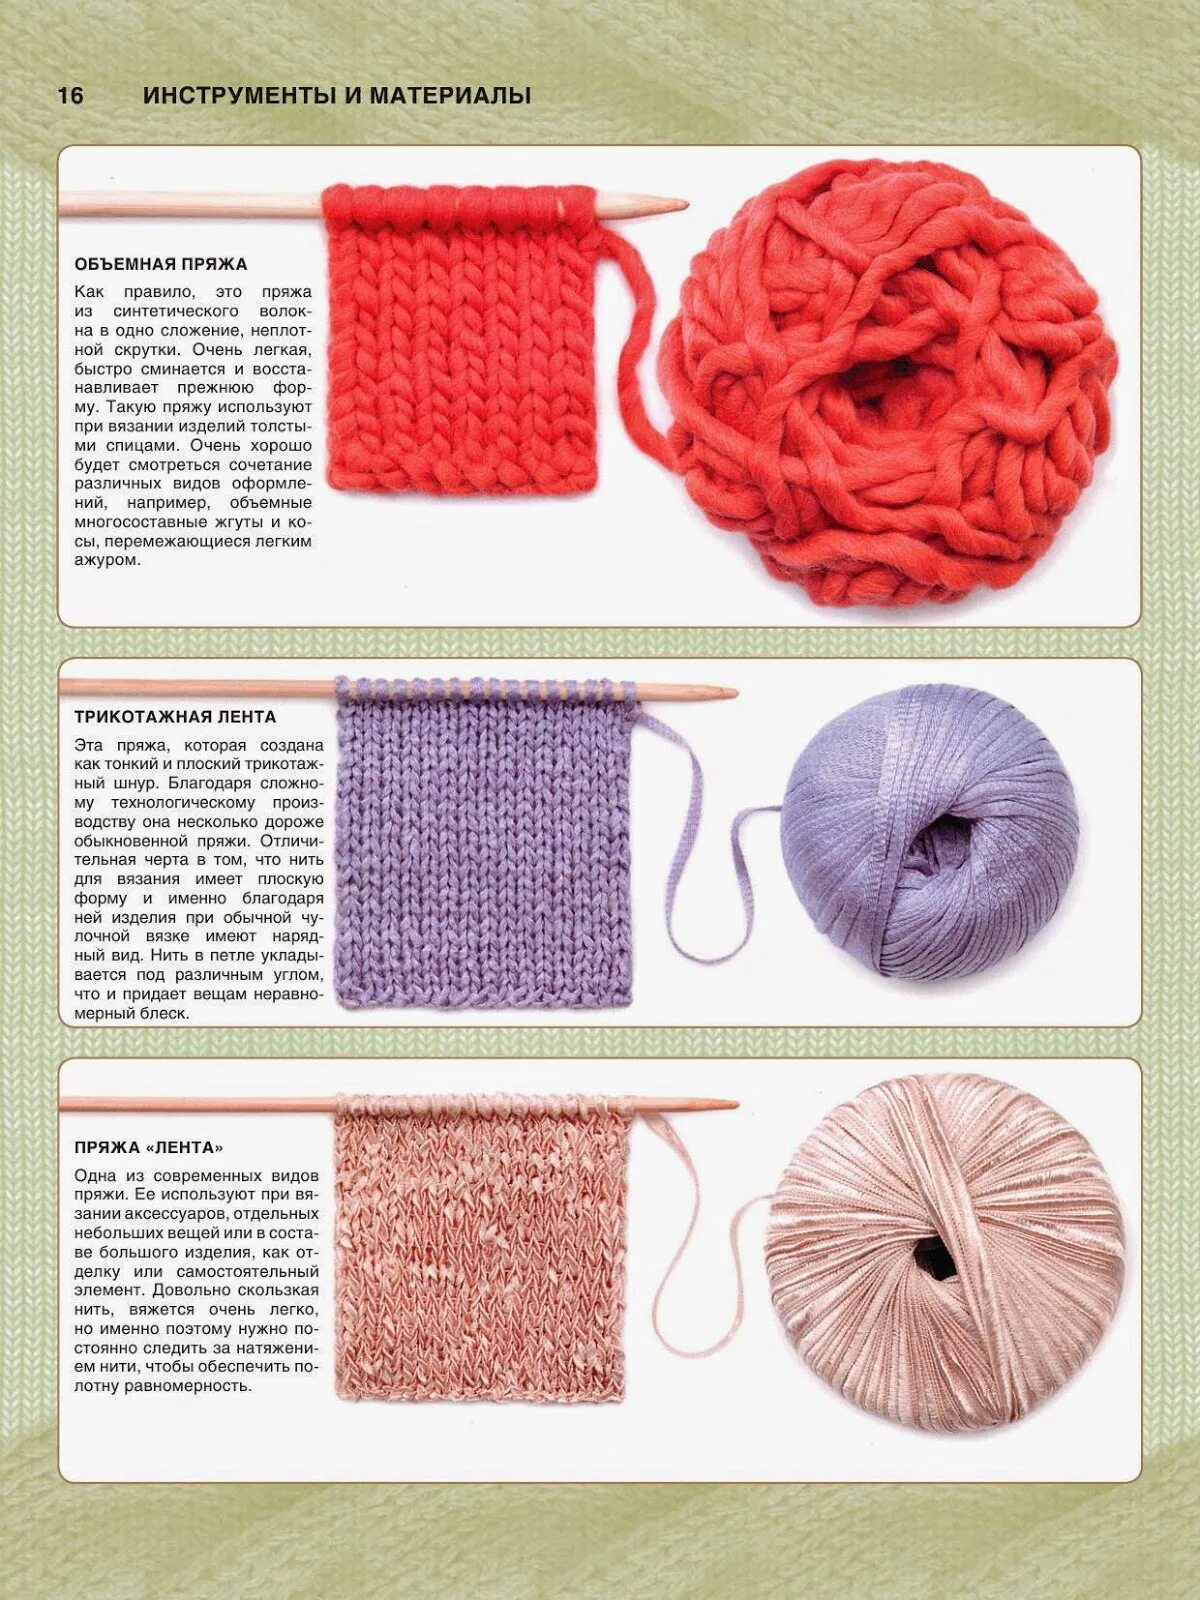 Разновидность ниток для вязания. Виды пряжи для вязания крючком. Типы ниток для вязания. Самый полезный полный и современный самоучитель по вязанию.